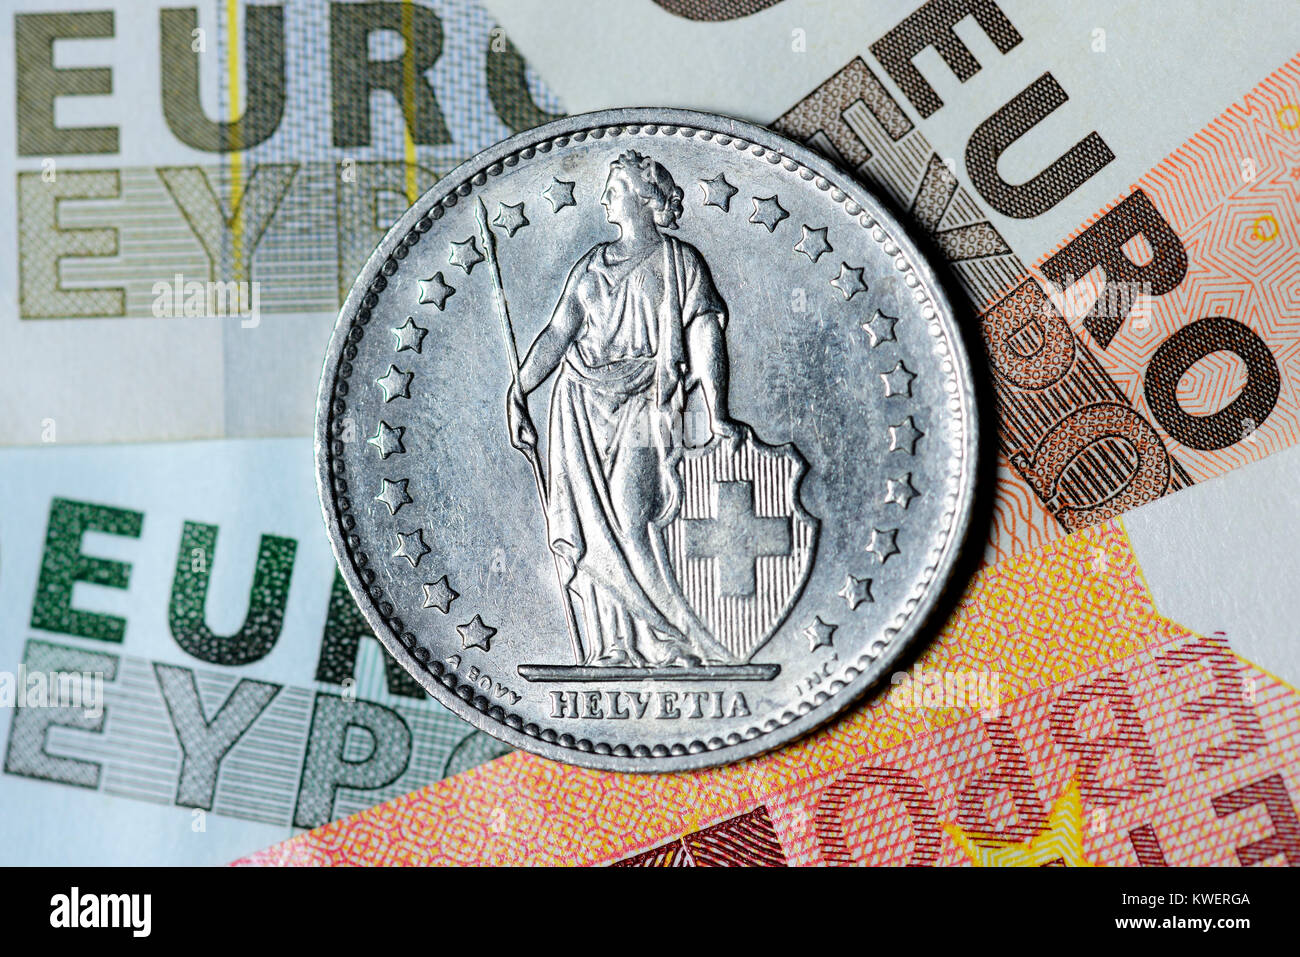 Franco svizzero su euronotes, terminando del franco-almeno il corso per l'euro, Schweizer Franken auf Euroscheinen, Beendigung des Franken-Mindestkurses zum E Foto Stock